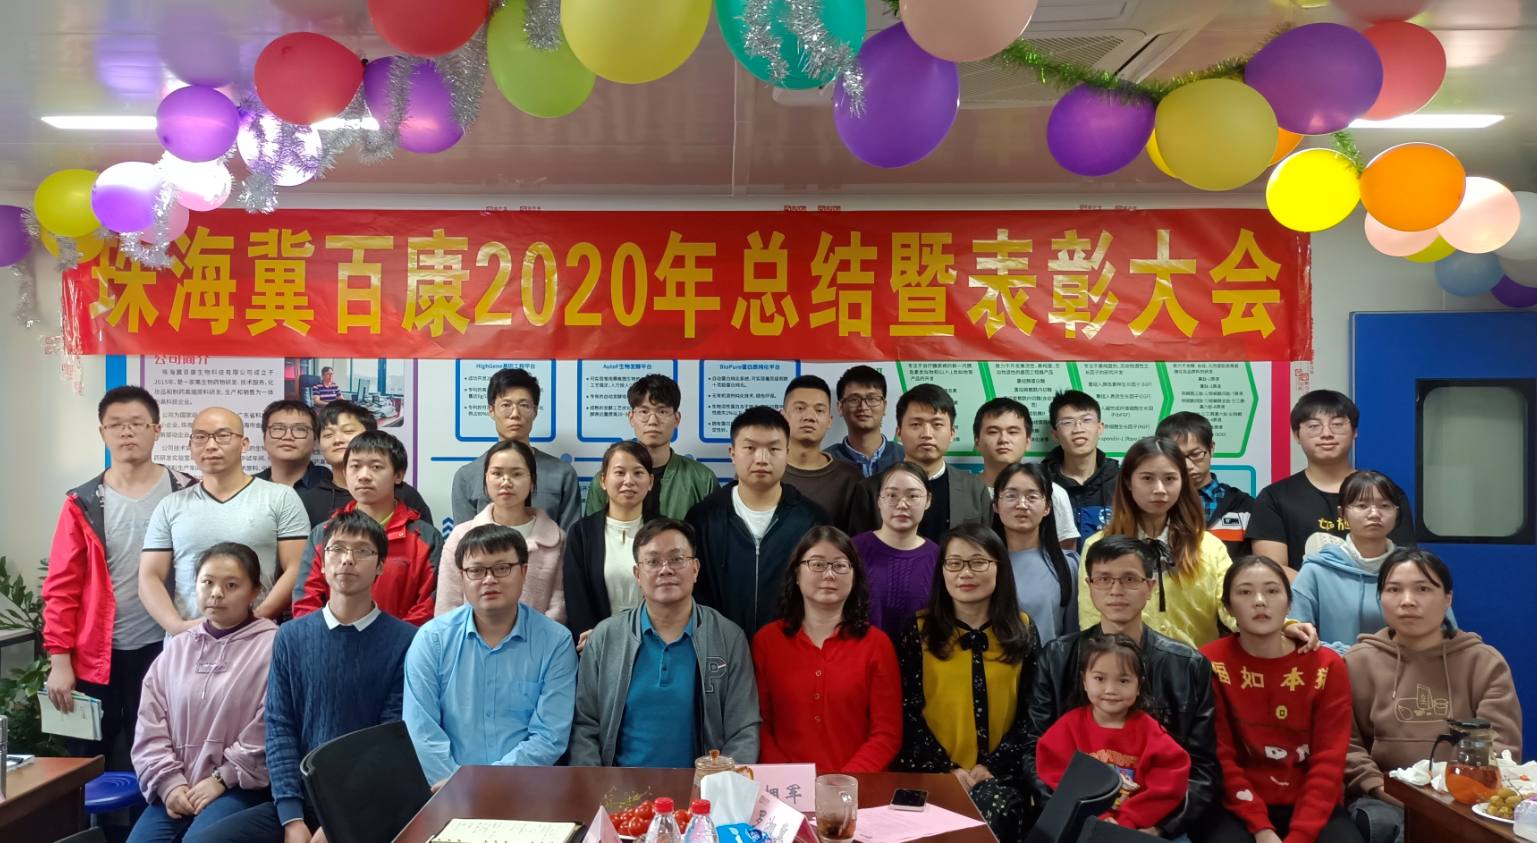 珠海冀百康生物科技有限公司2020年度总结暨表彰大会顺利召开